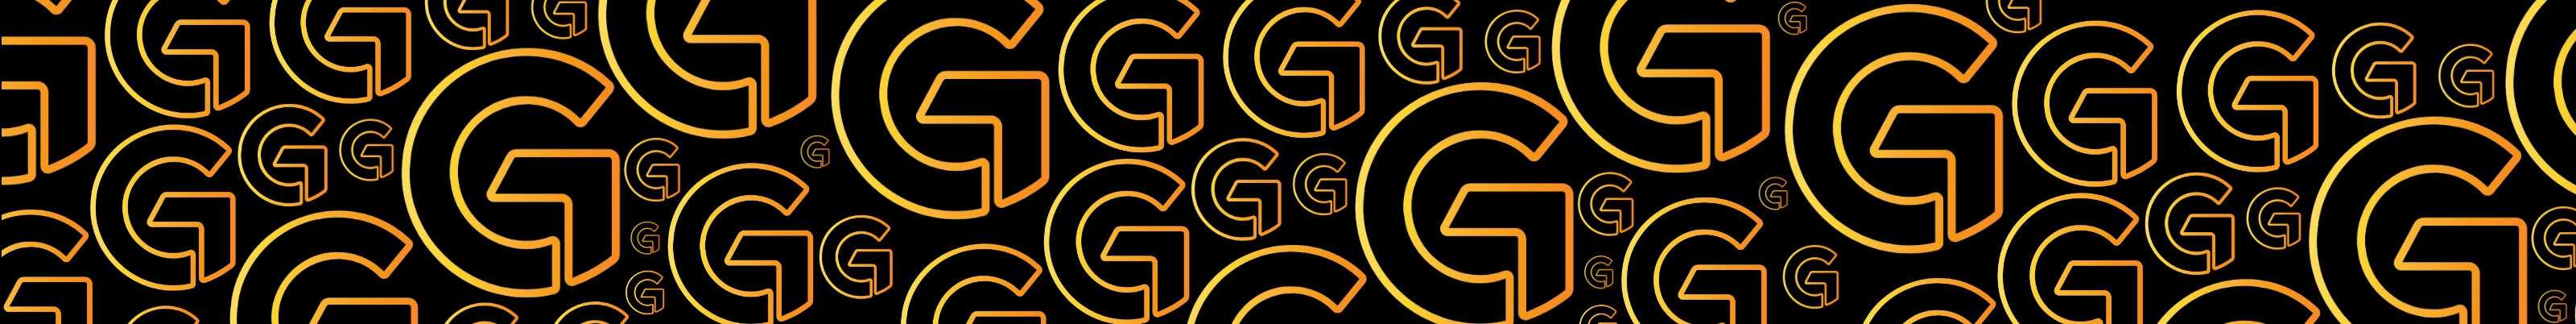 G Social's profile banner